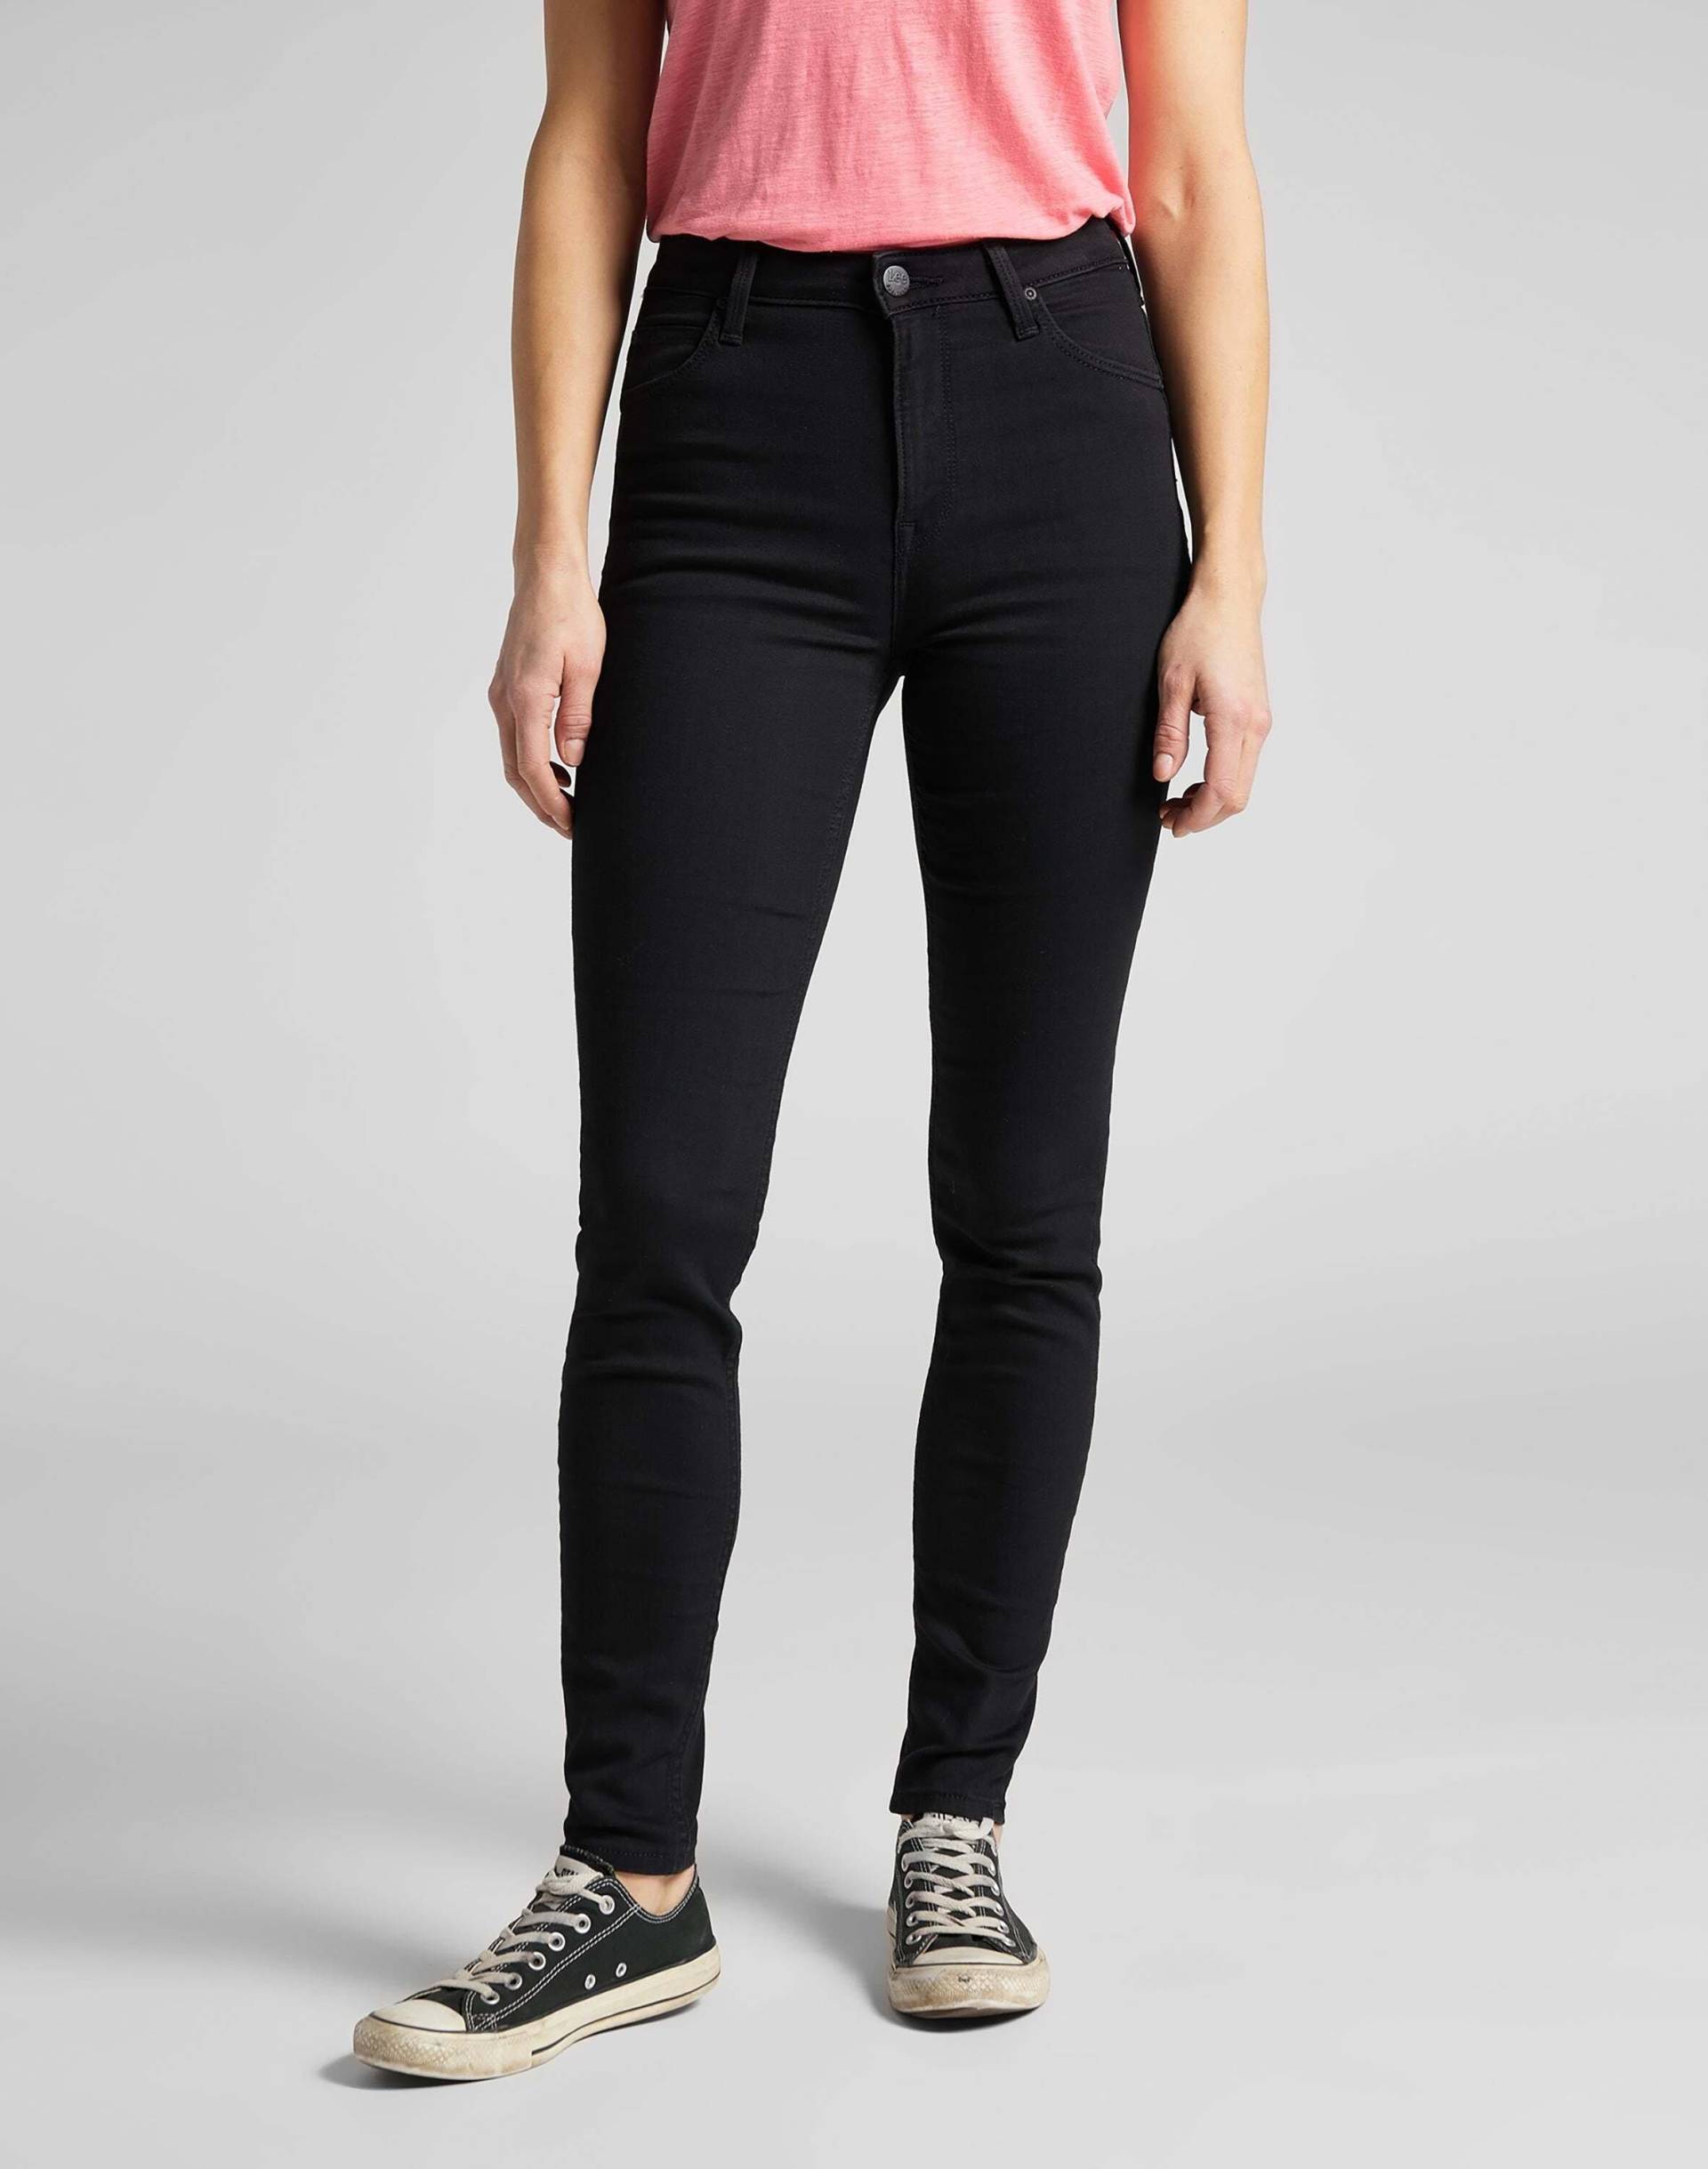 Jeans Skinny Fit Scarlett High Damen Schwarz L31/W24 von Lee